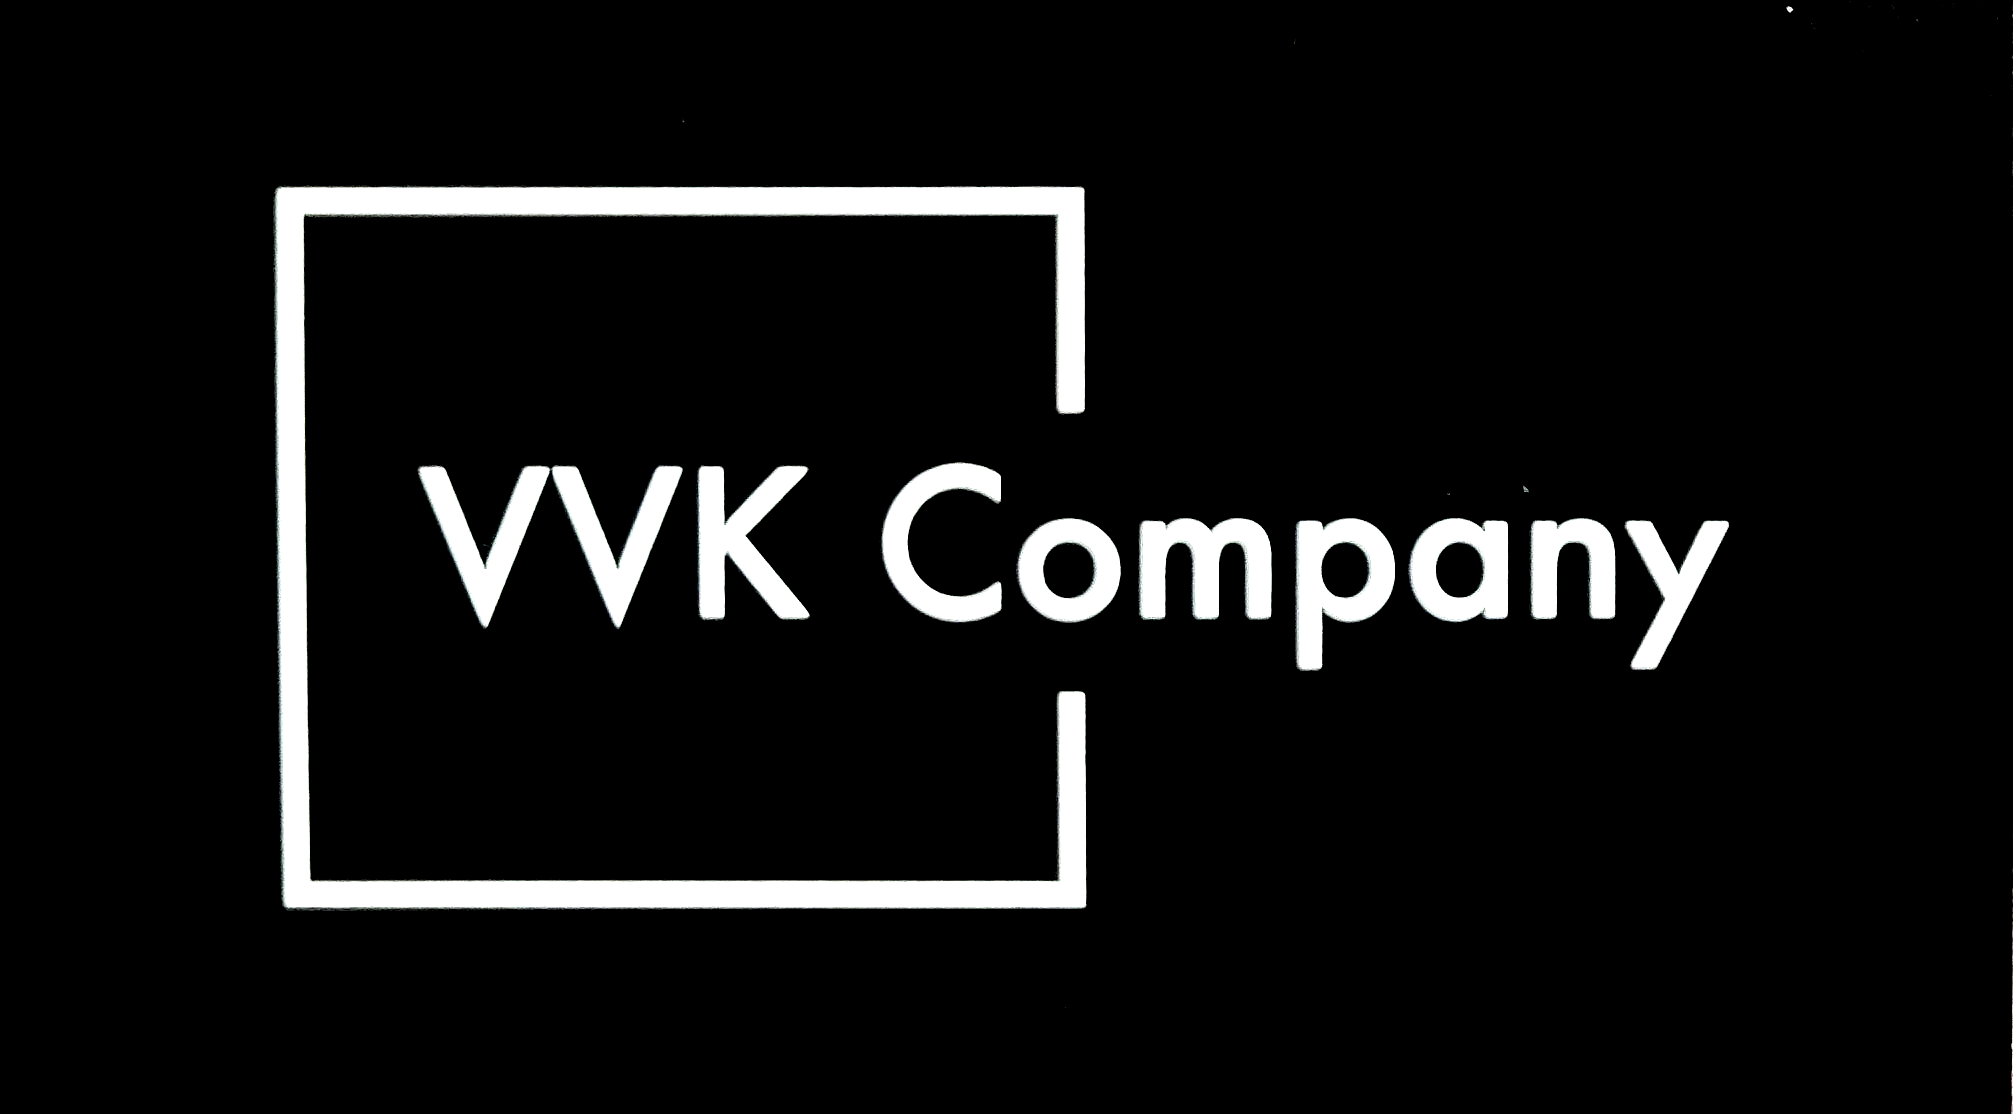 VVK Company - Unlicensed Contractor Logo